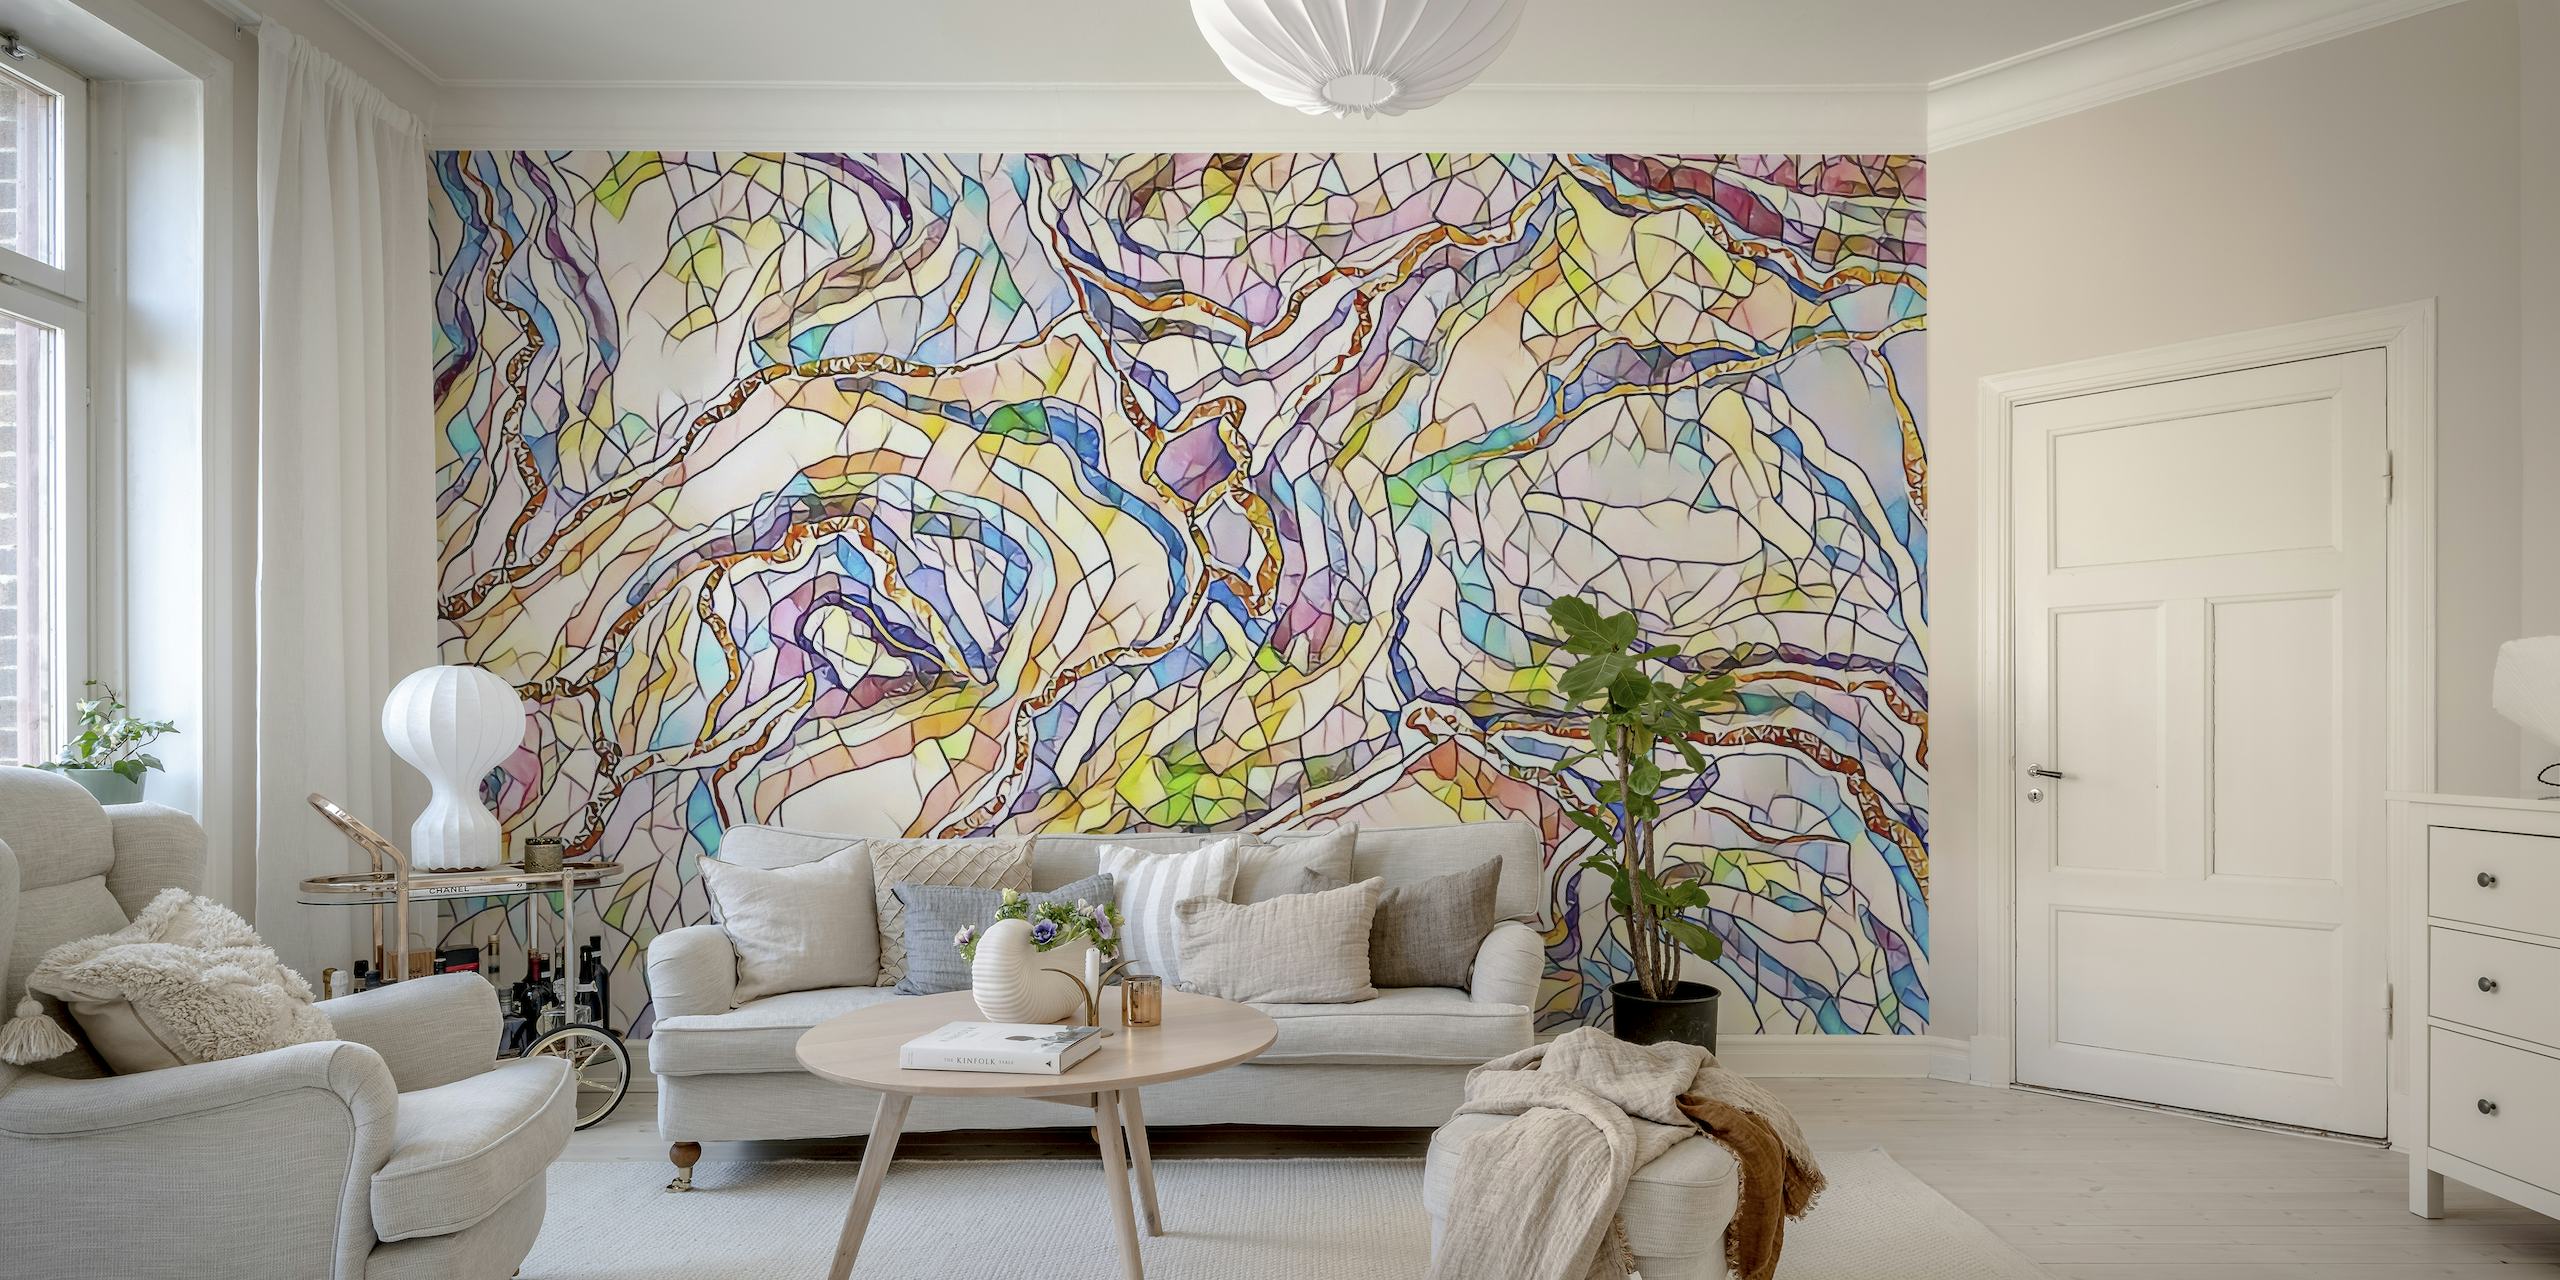 Abstraktes Mosaik-Wandbild in Pastellfarben mit einer Mischung aus sanften Farben, die ein heiteres Design schaffen.